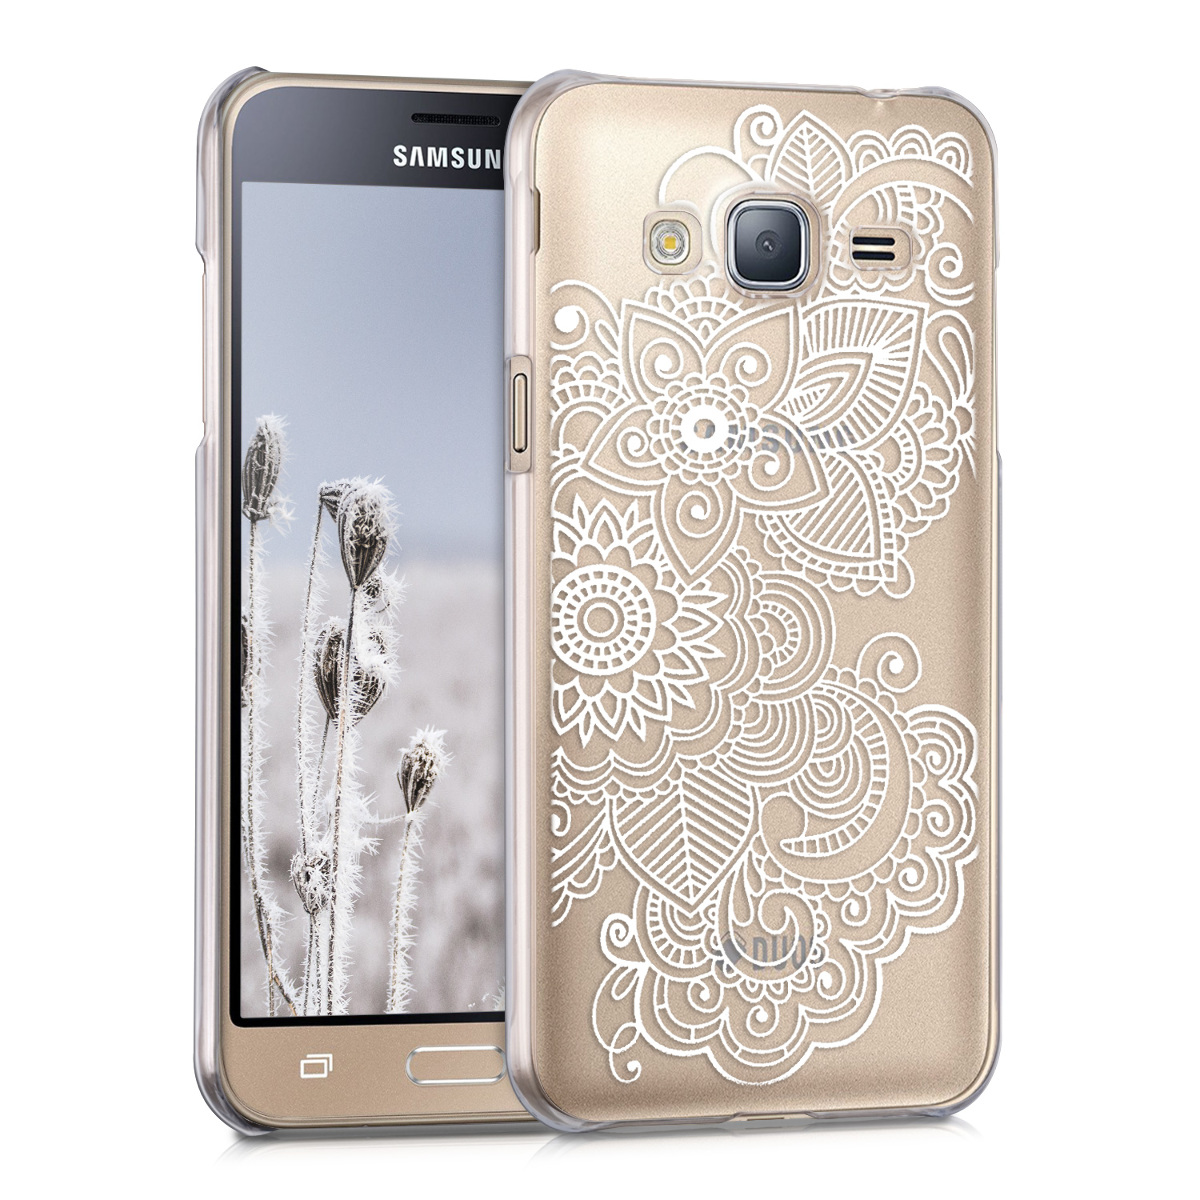 Kvalitní plastové pouzdro pro Samsung J3 (2016) DUOS - Etno-květiny bílé / transparentní